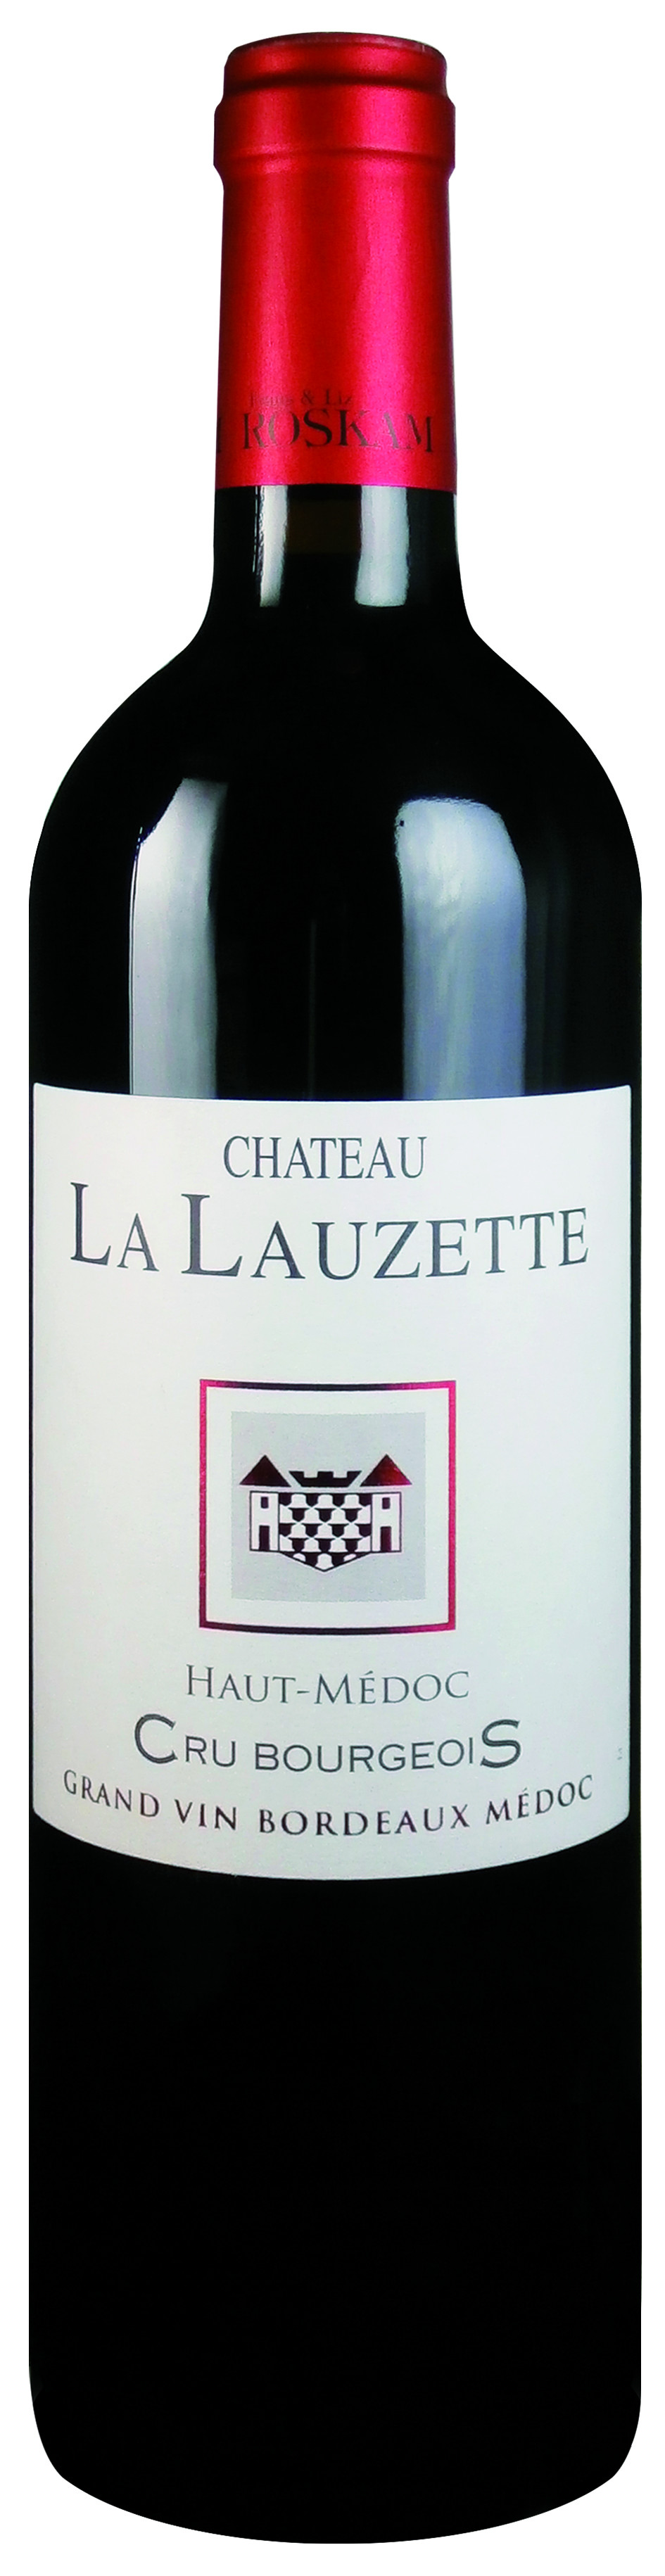 Chateau La Lauzette 75cl 2016 Haut-Medoc Cru Bourgeois